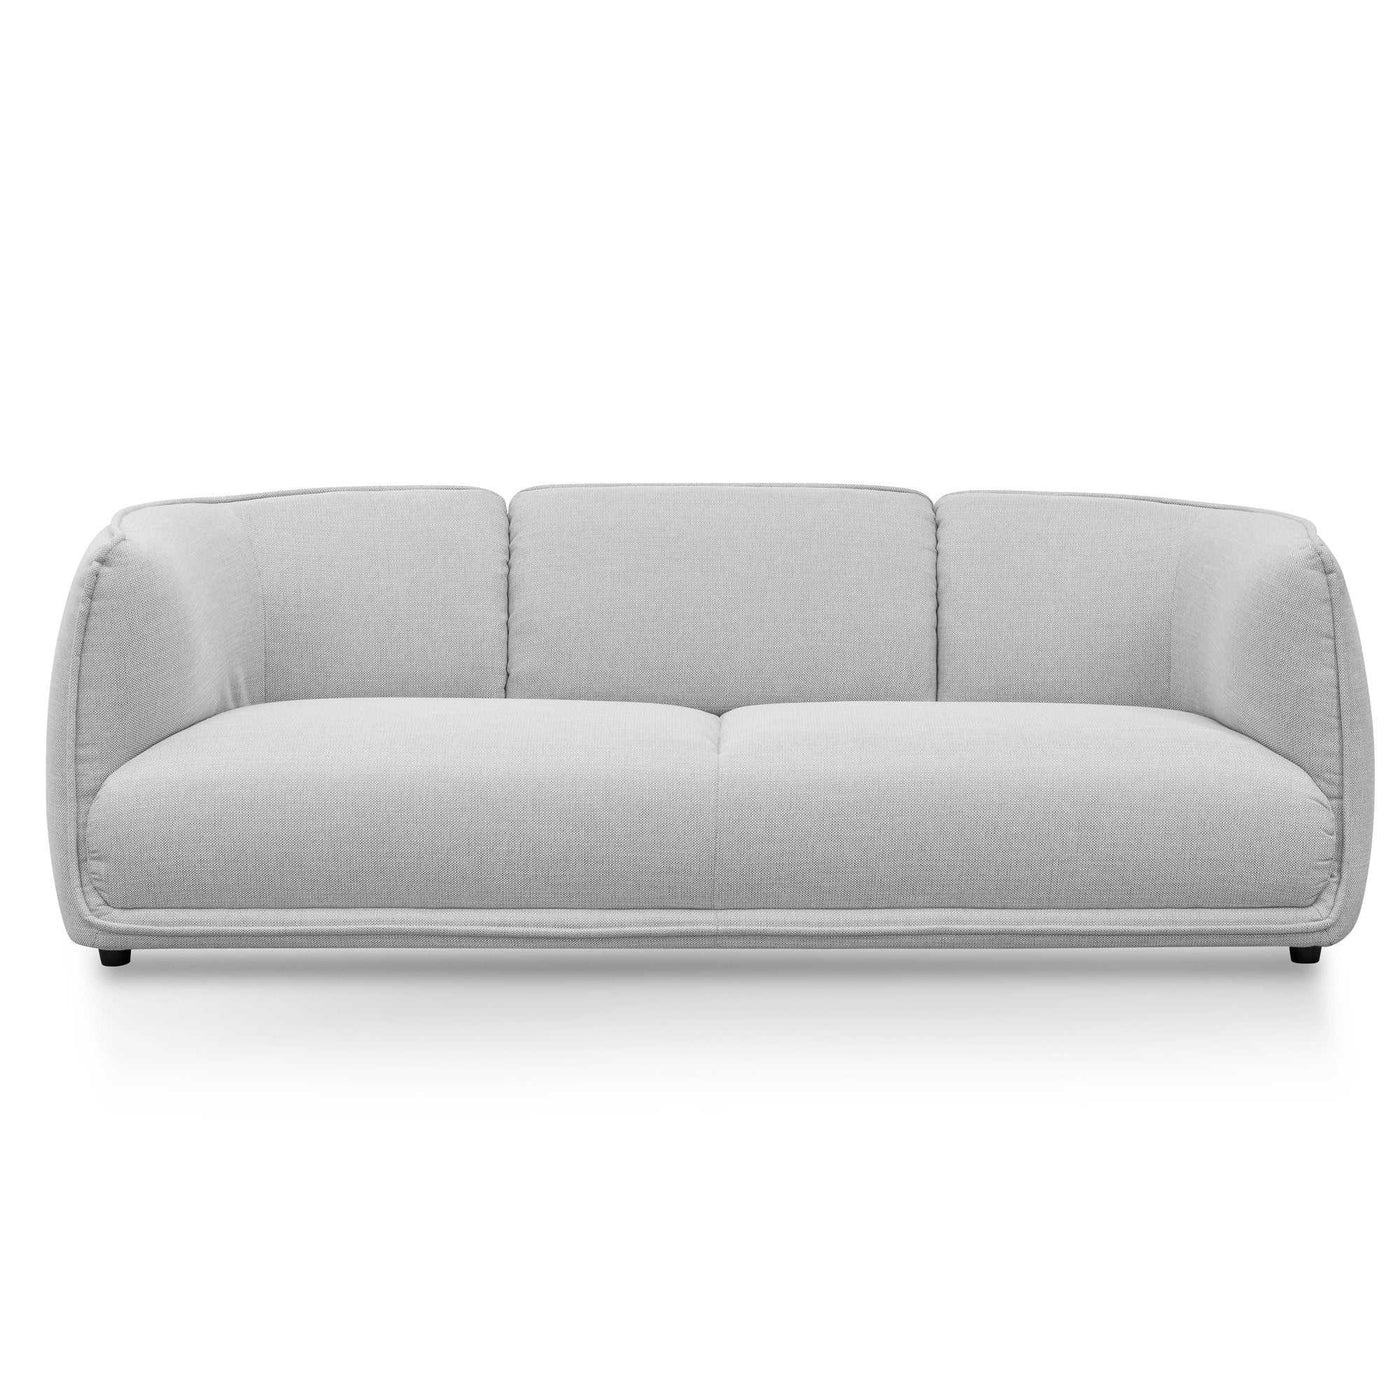 3 Seater Fabric Sofa- Light Texture Grey